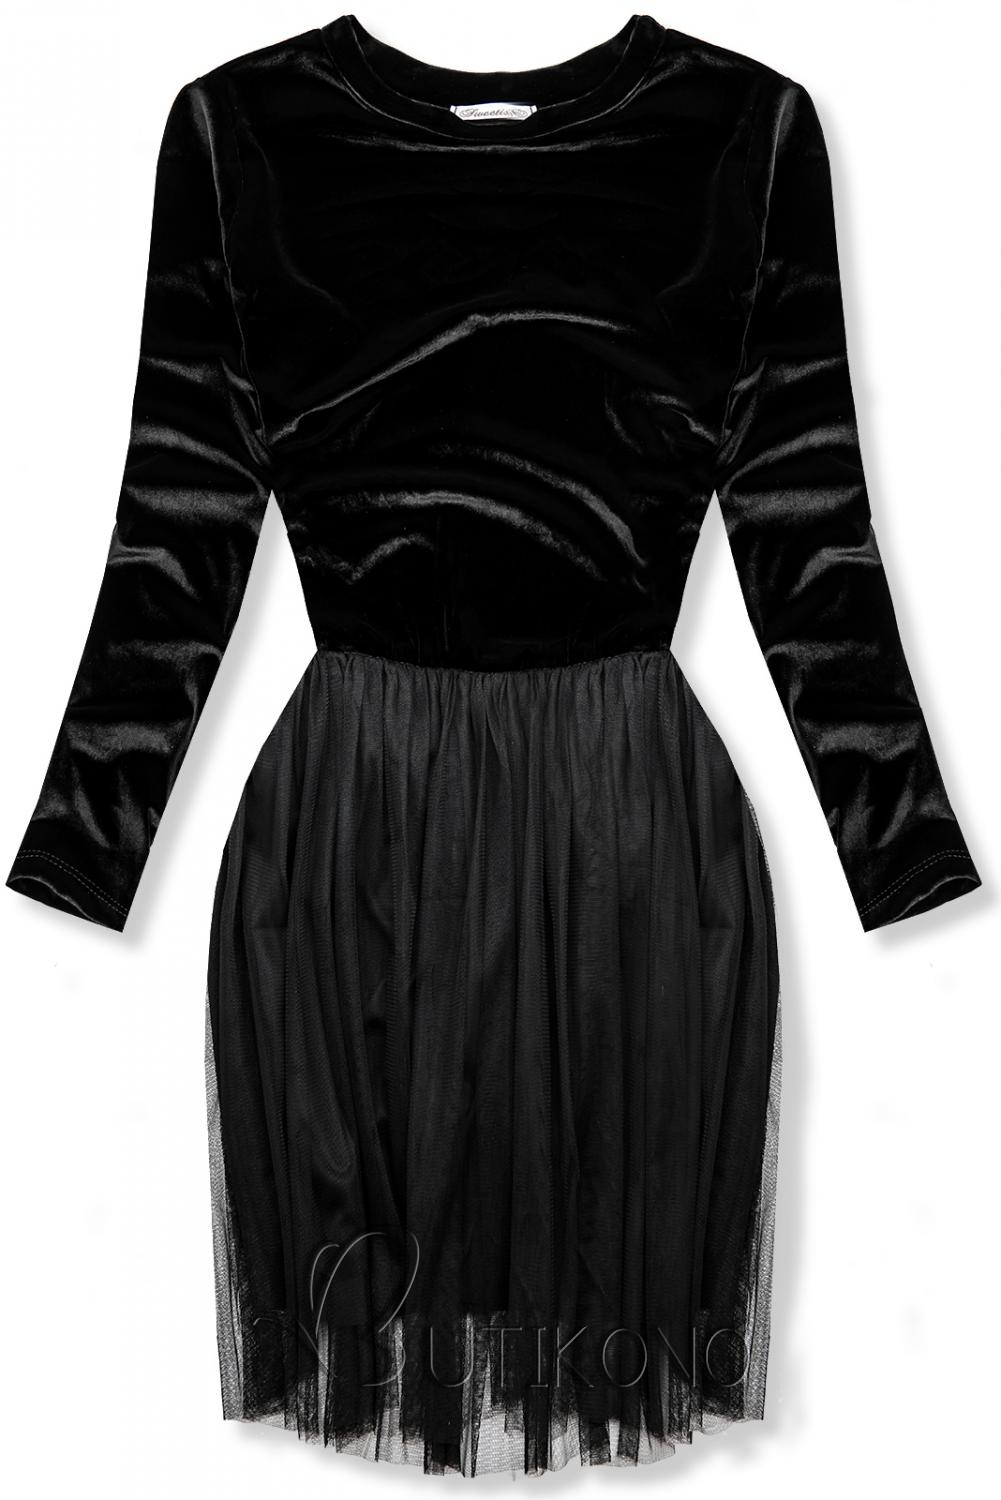 Čierne šaty s tylovou sukňou